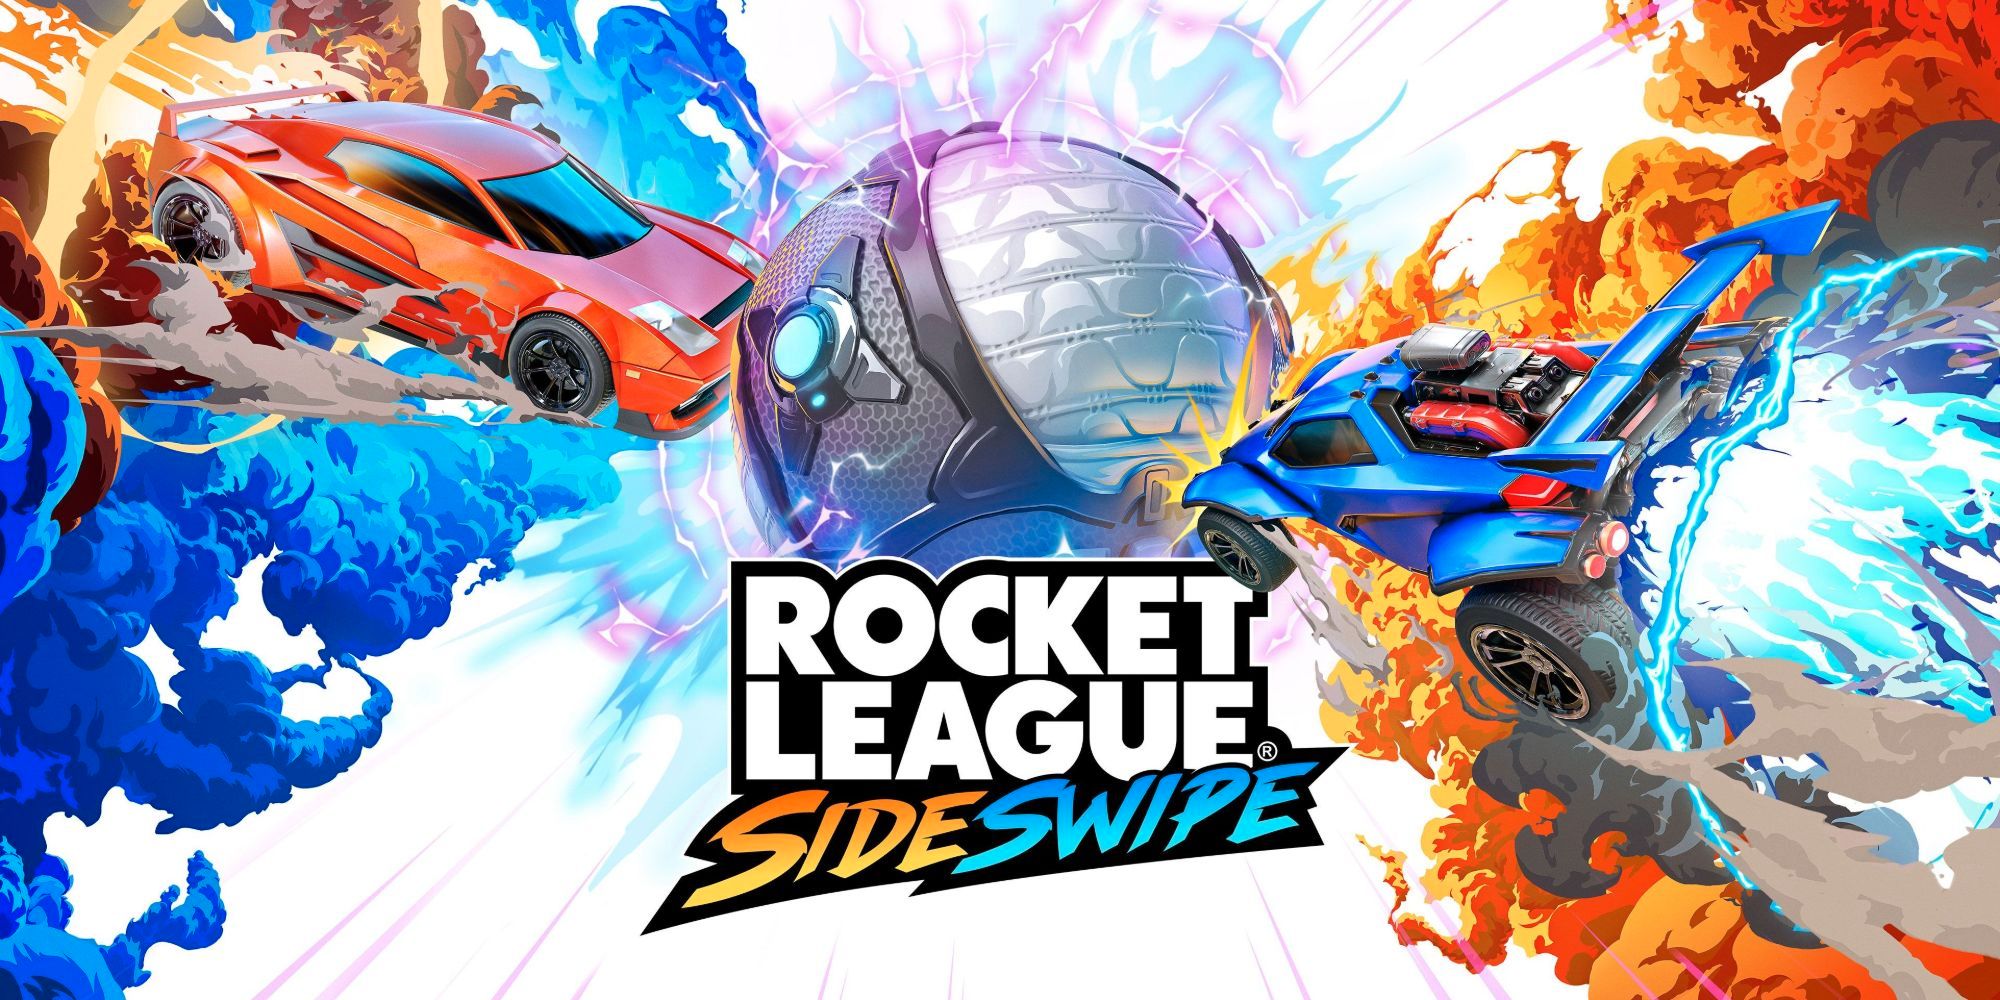 Rocket League Sideswipe mở đăng ký rộng rãi, chờ ngày ra mắt toàn cầu